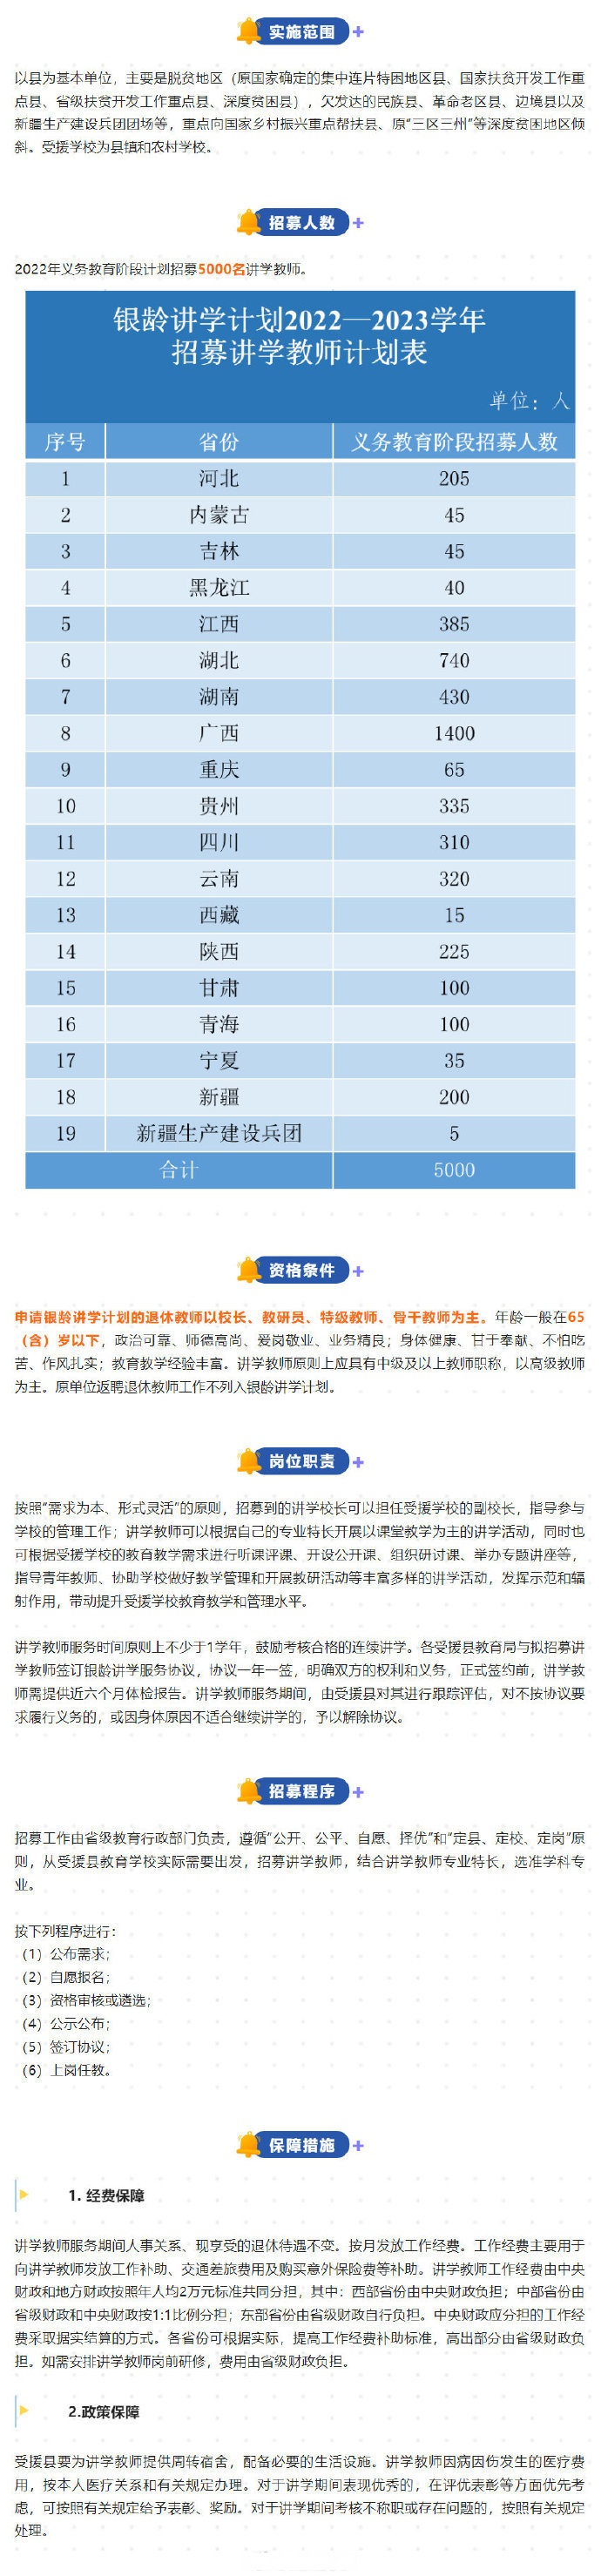 全国义务教育阶段计划招募5000名,四川省计划招募银龄讲学教师310名